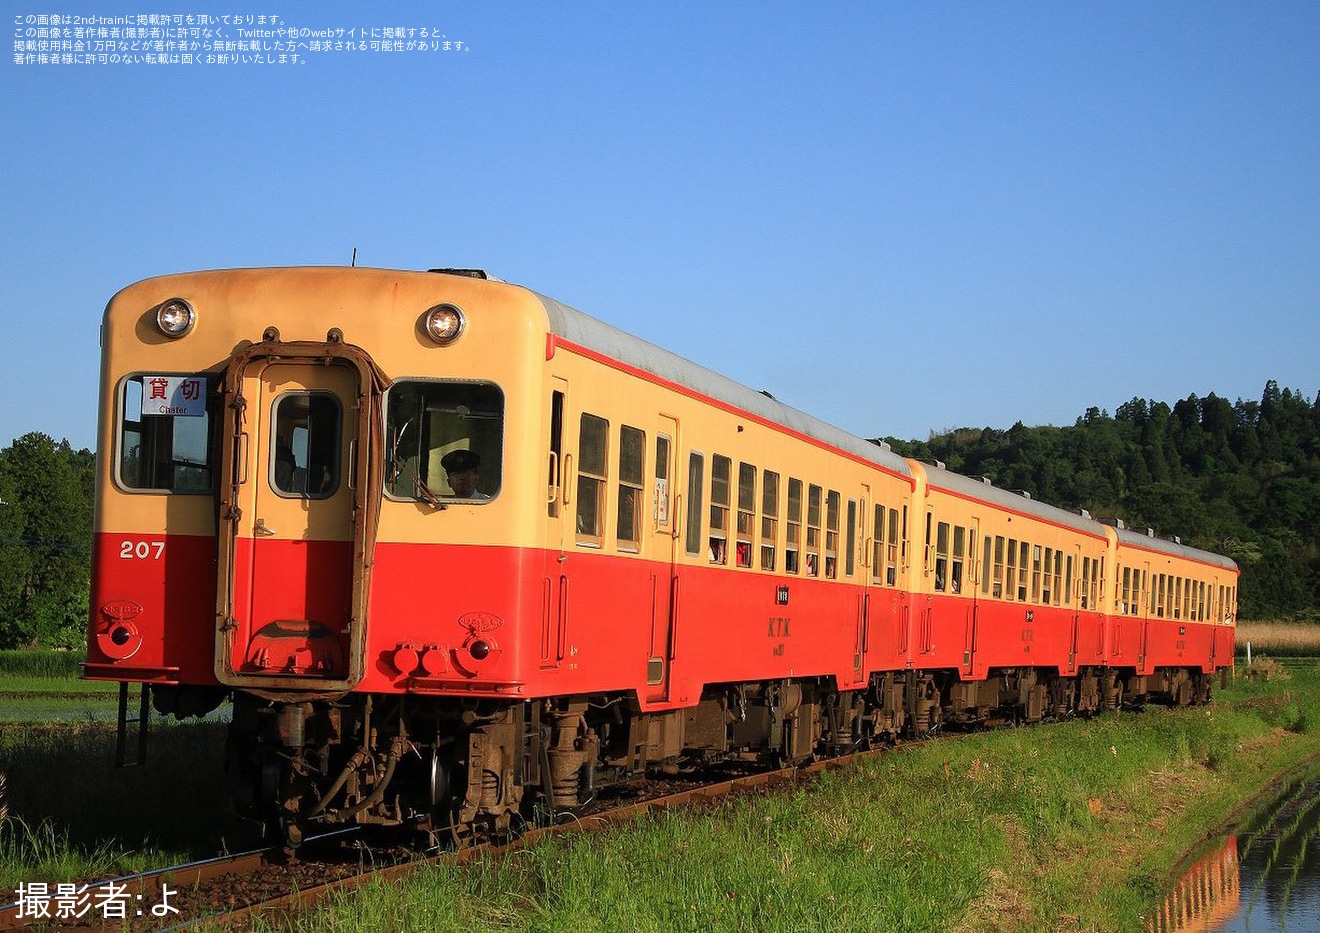 【小湊】キハ207が使用された貸切列車の拡大写真